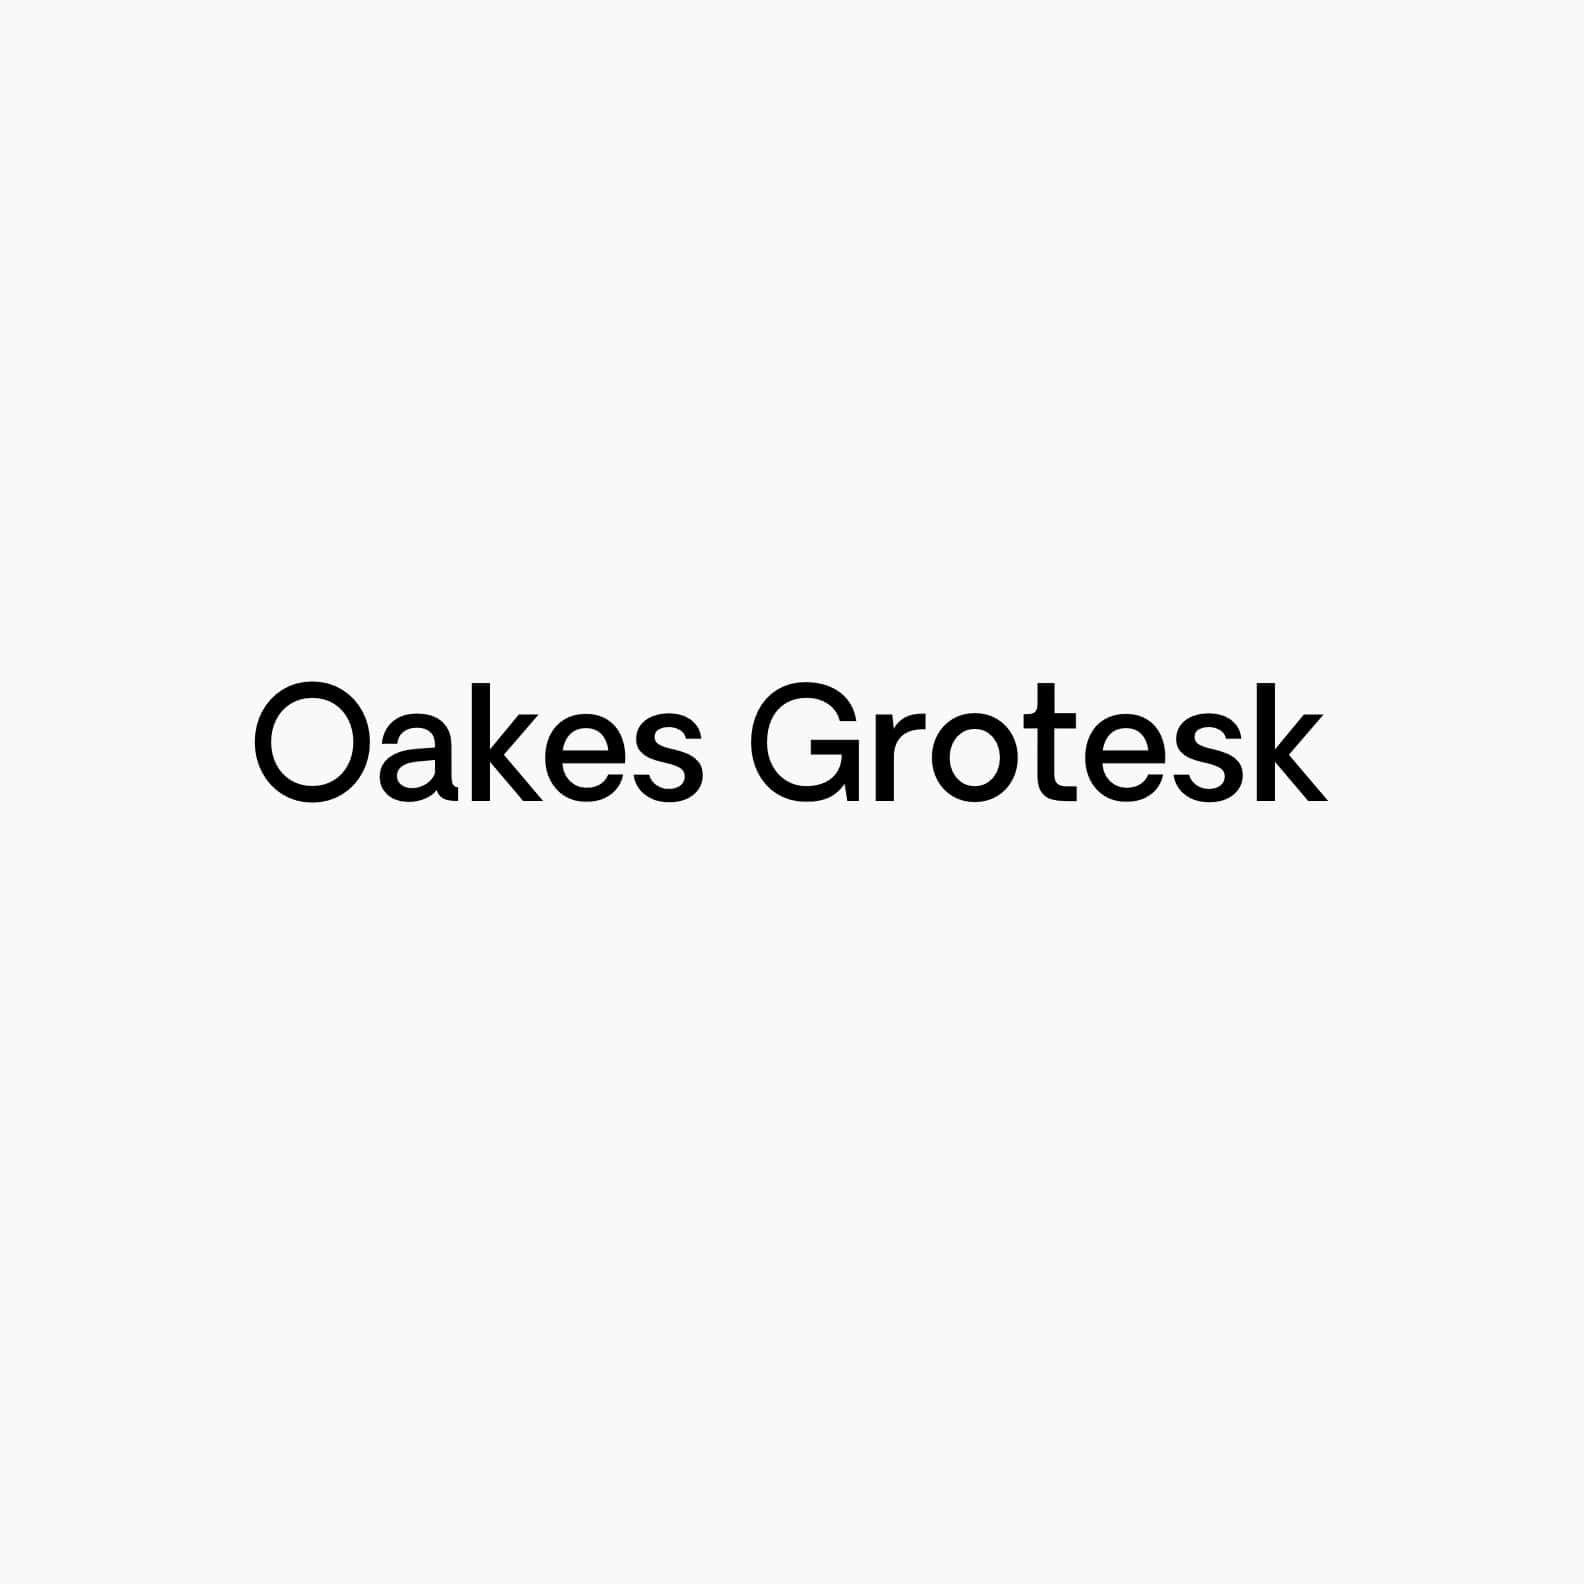 Oakes Grotesk - Full Family